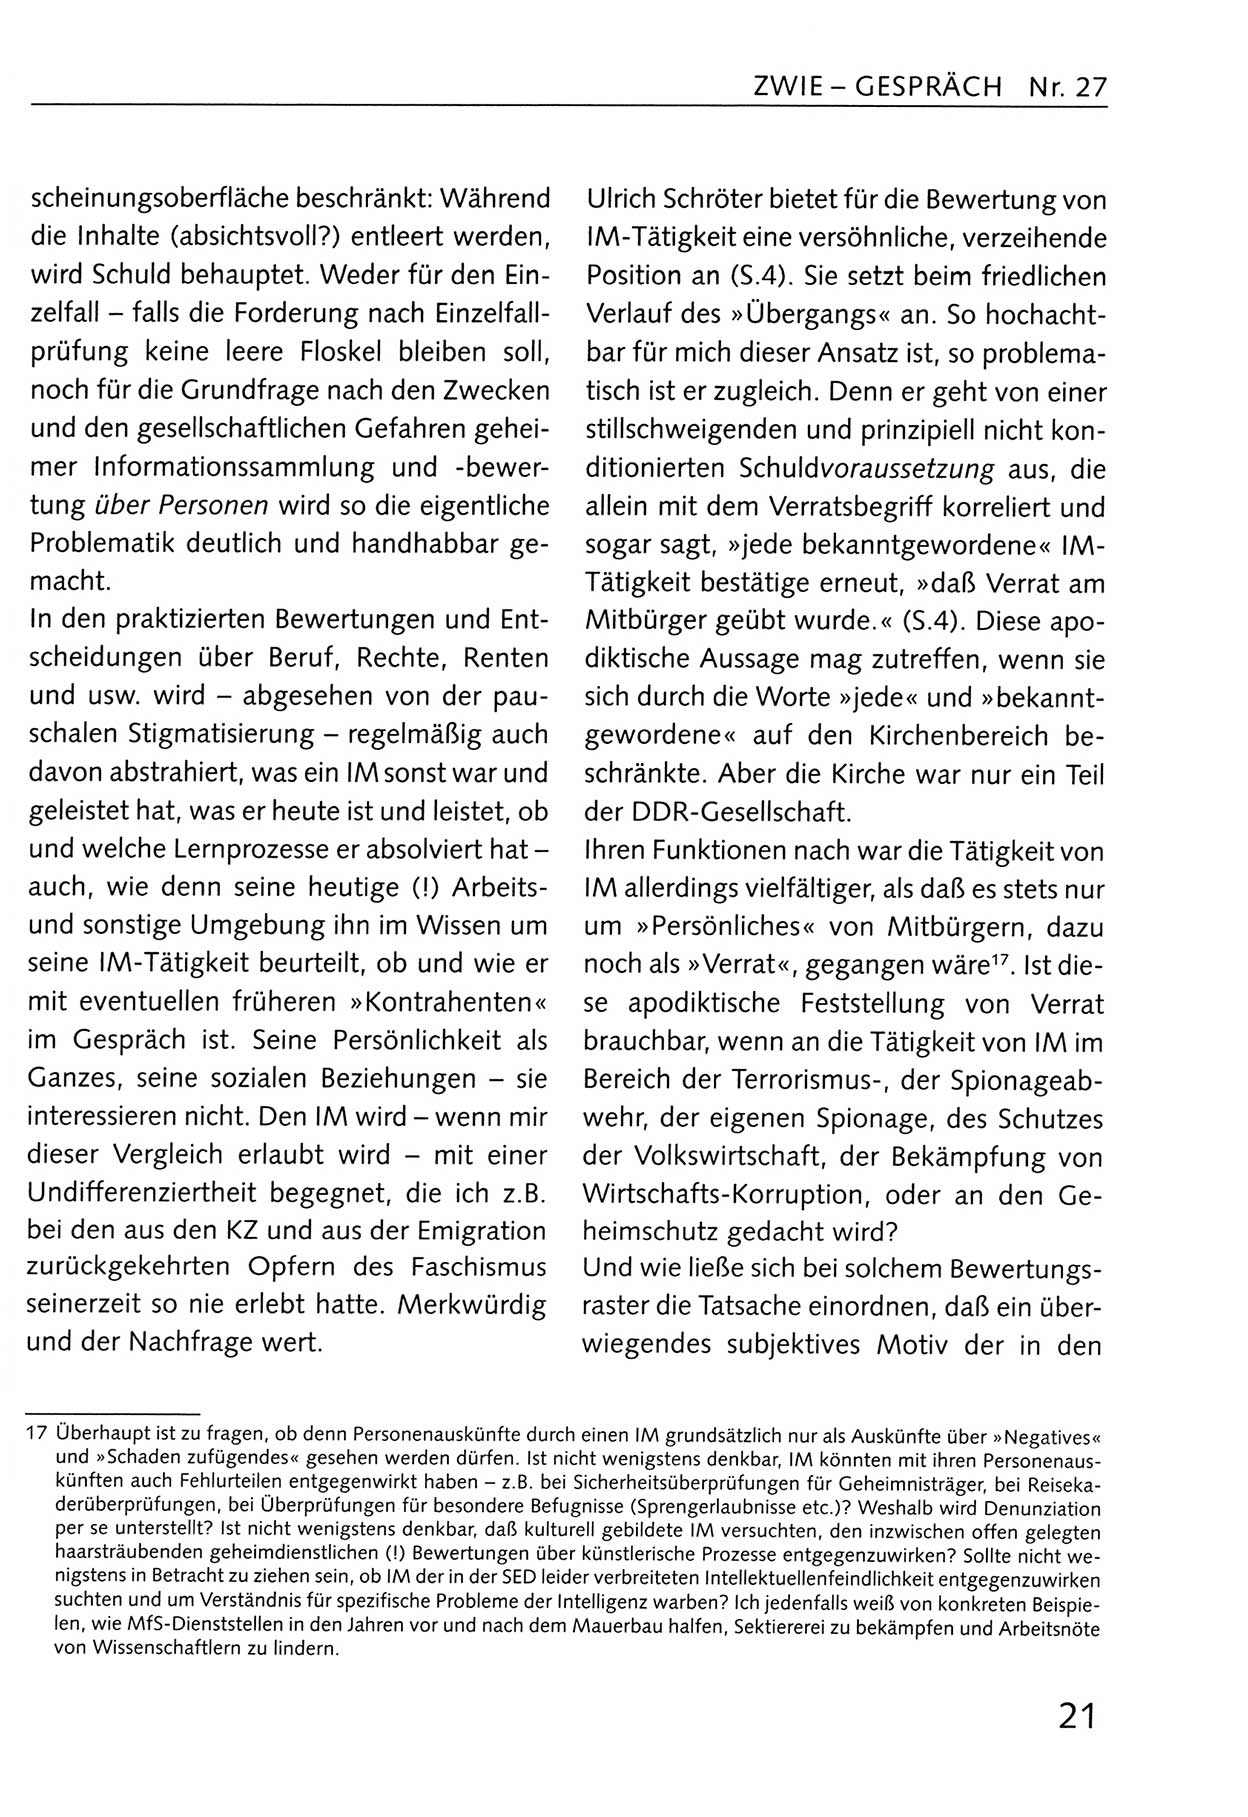 Zwie-Gespräch, Beiträge zum Umgang mit der Staatssicherheits-Vergangenheit [Deutsche Demokratische Republik (DDR)], Ausgabe Nr. 27, Berlin 1995, Seite 21 (Zwie-Gespr. Ausg. 27 1995, S. 21)